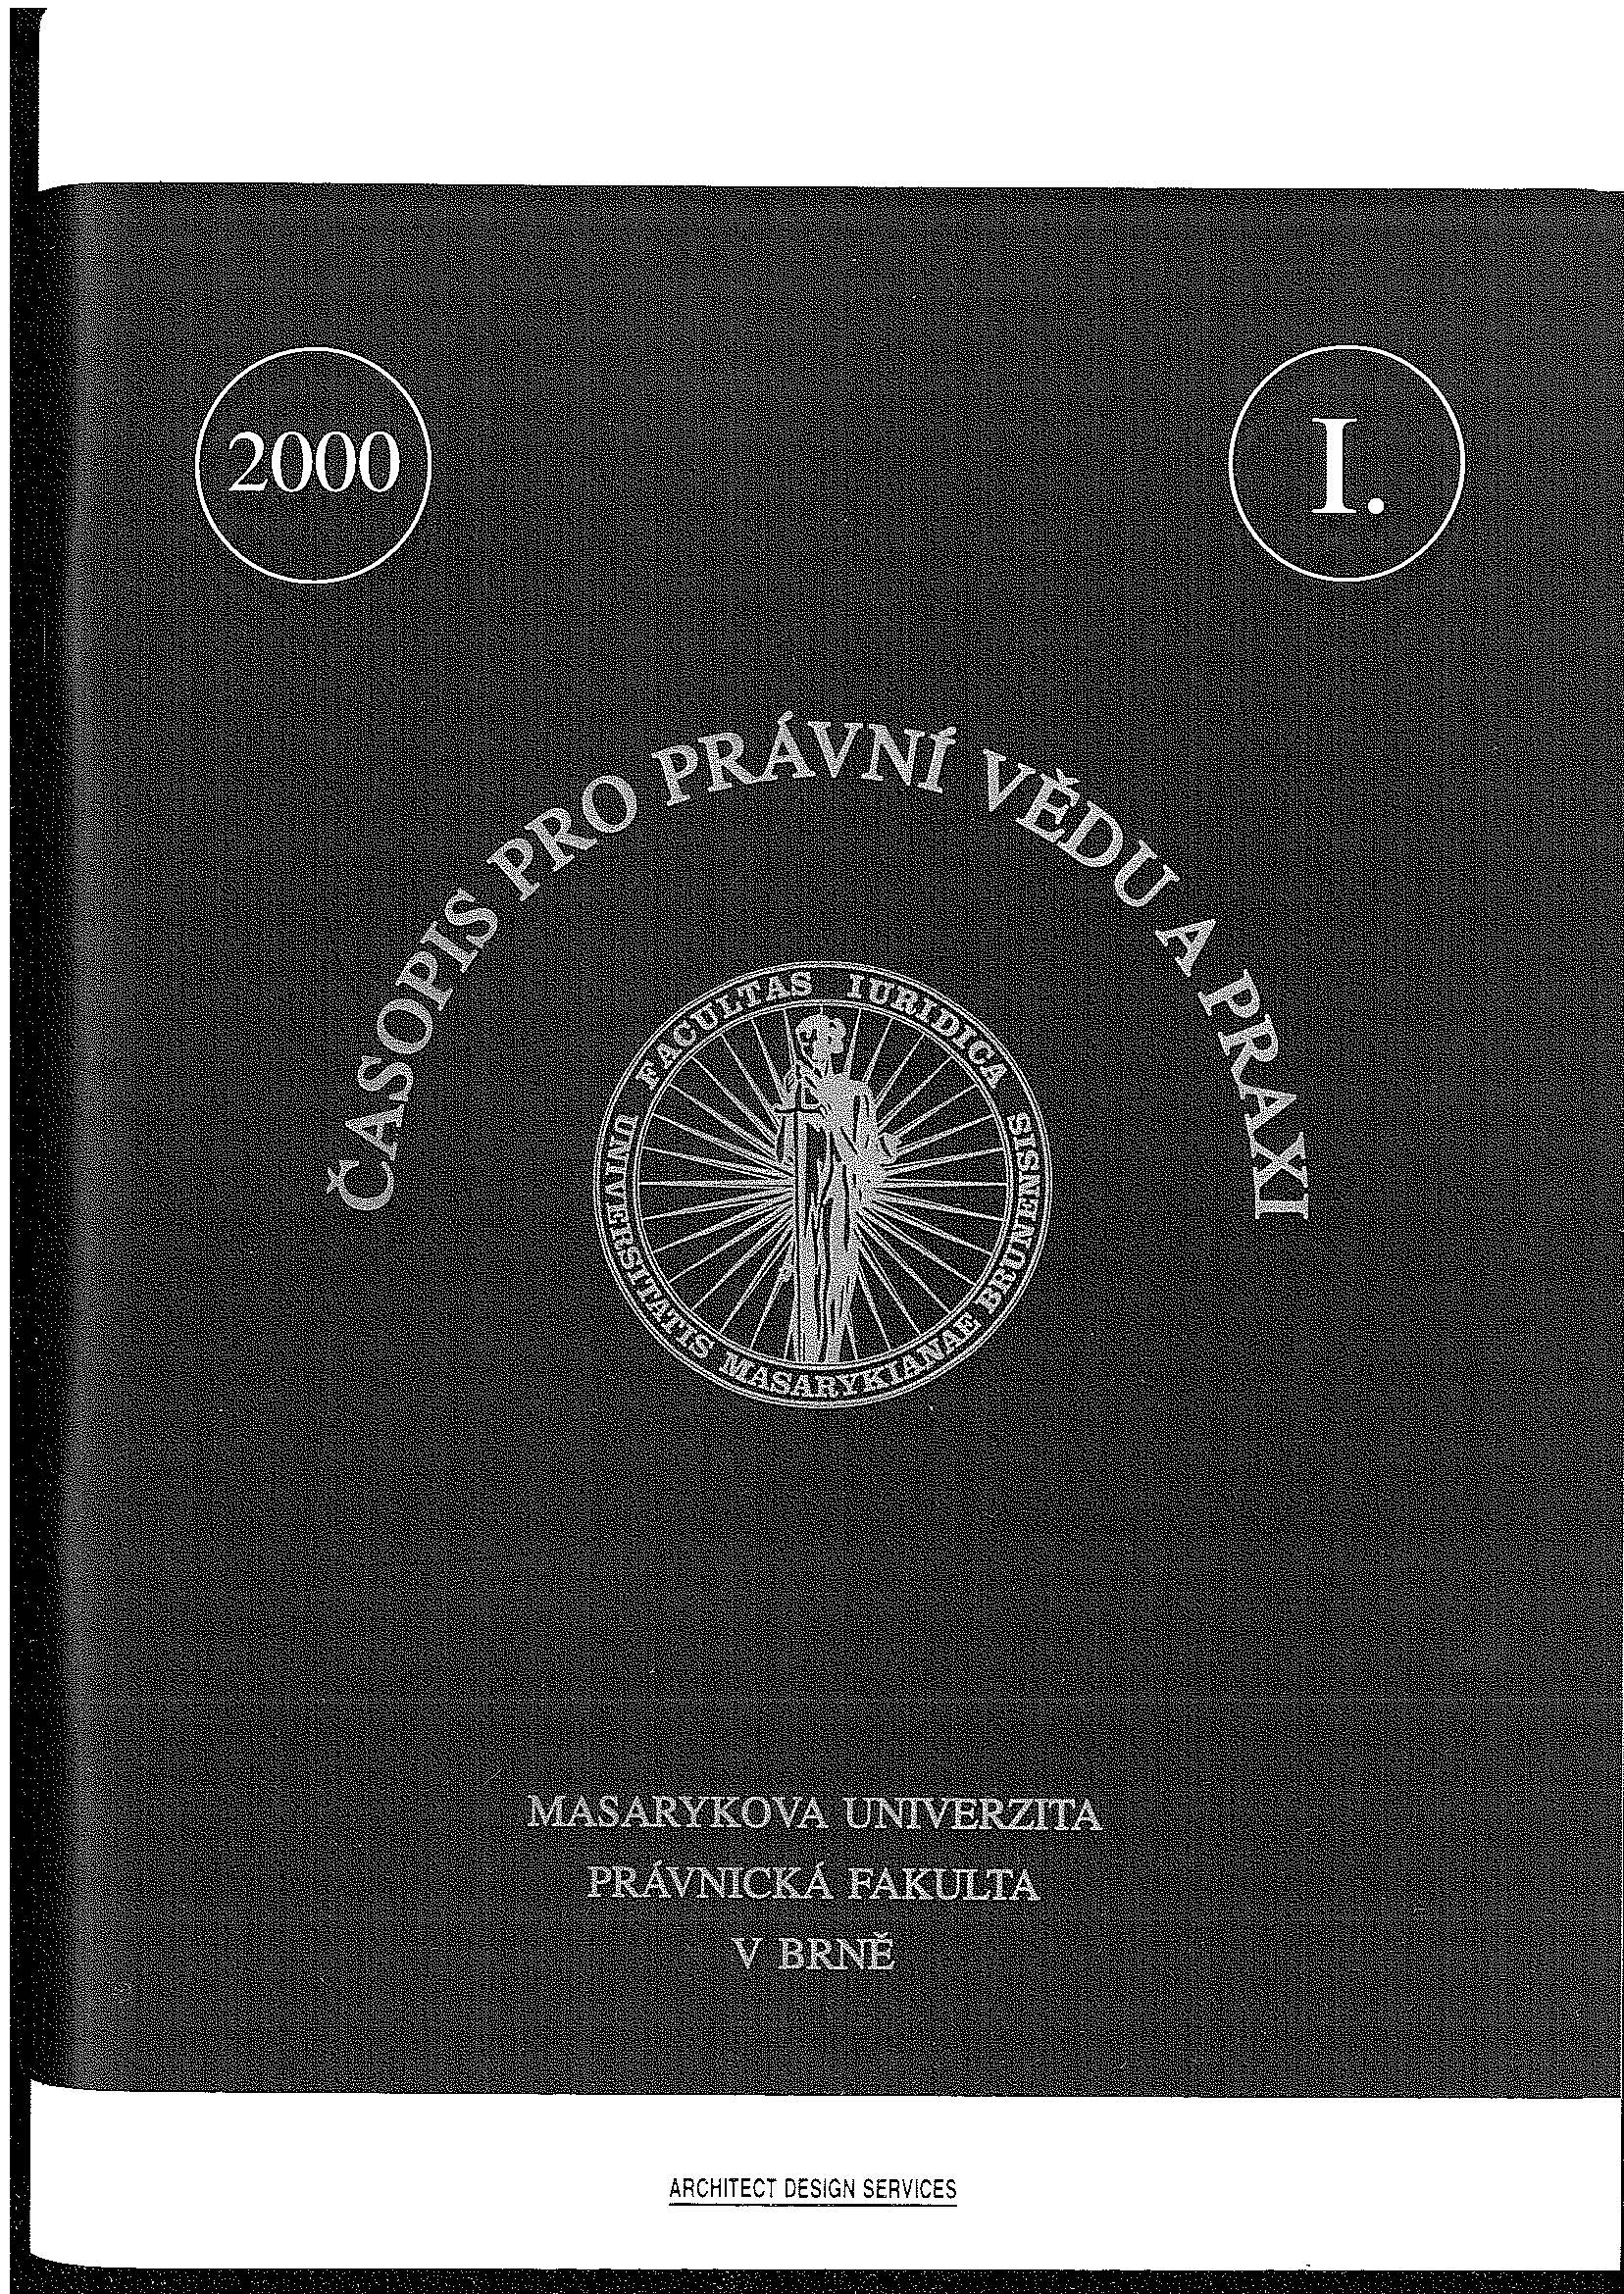 Some legal issues of Česká tisková kancelář (Czech Press Agency) Cover Image